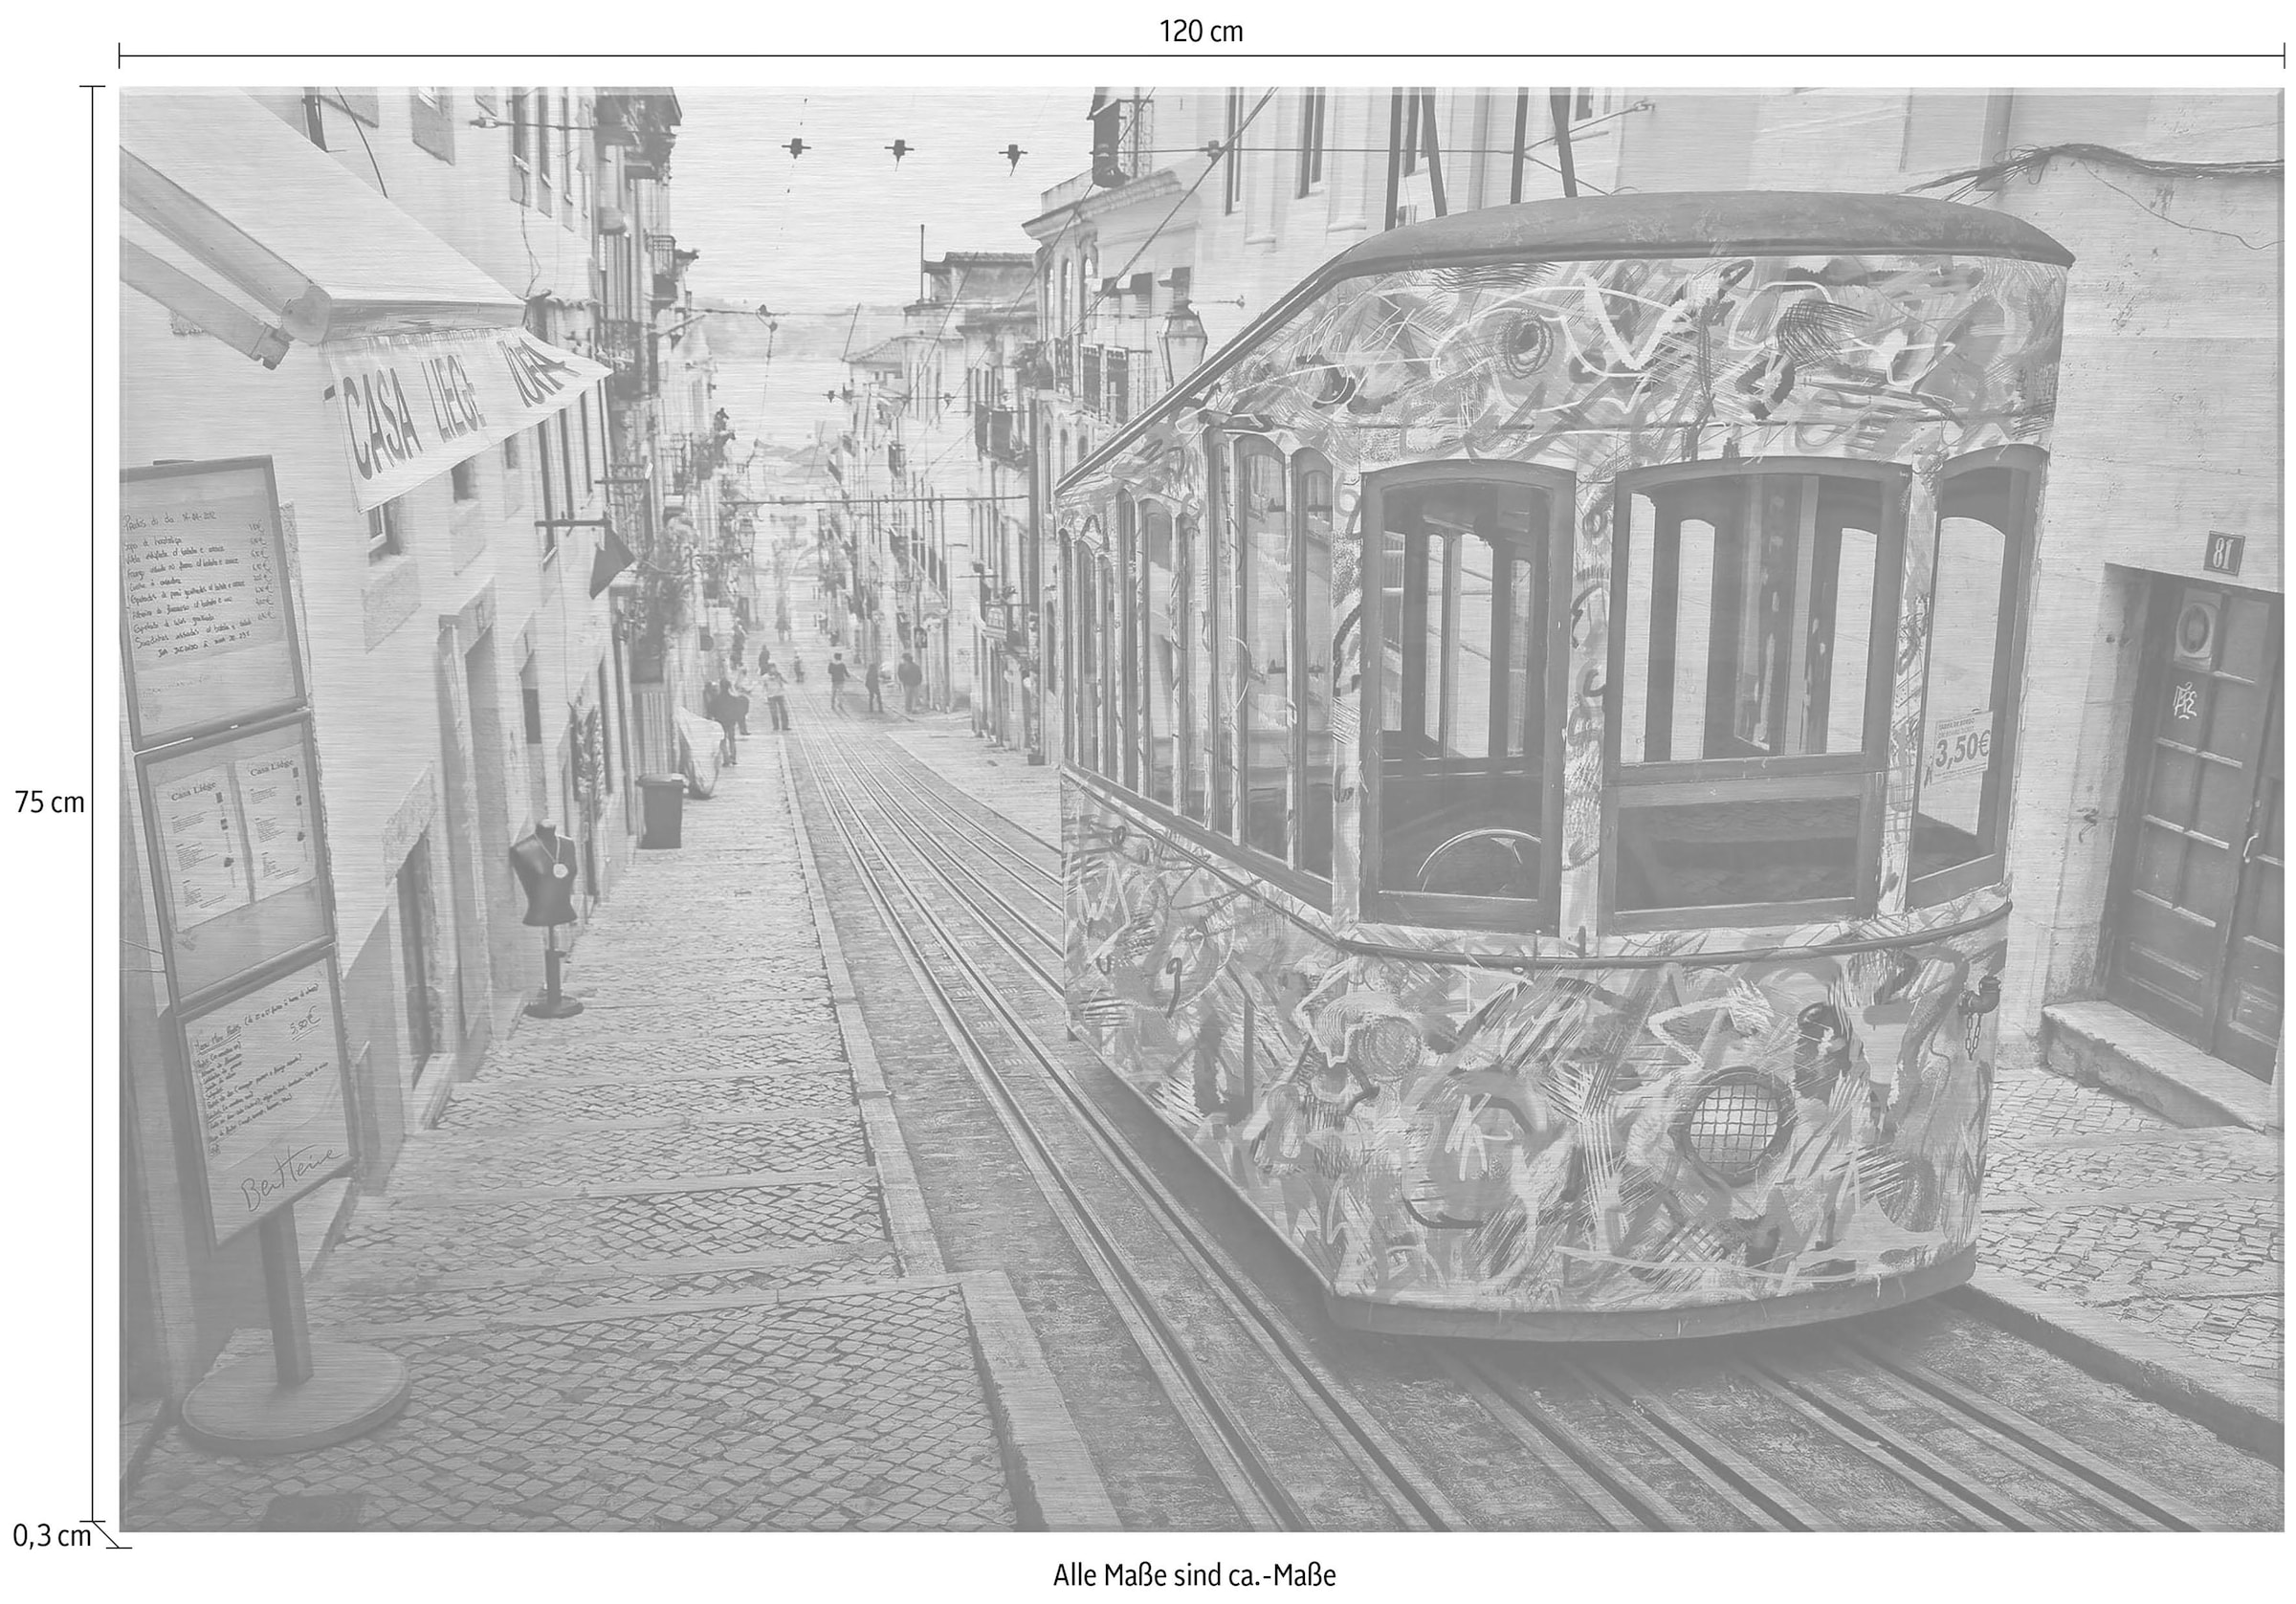 Wall-Art Metallbild »Ben Heine - Tram in Lissabon«, mit Silbereffekt online  bei OTTO